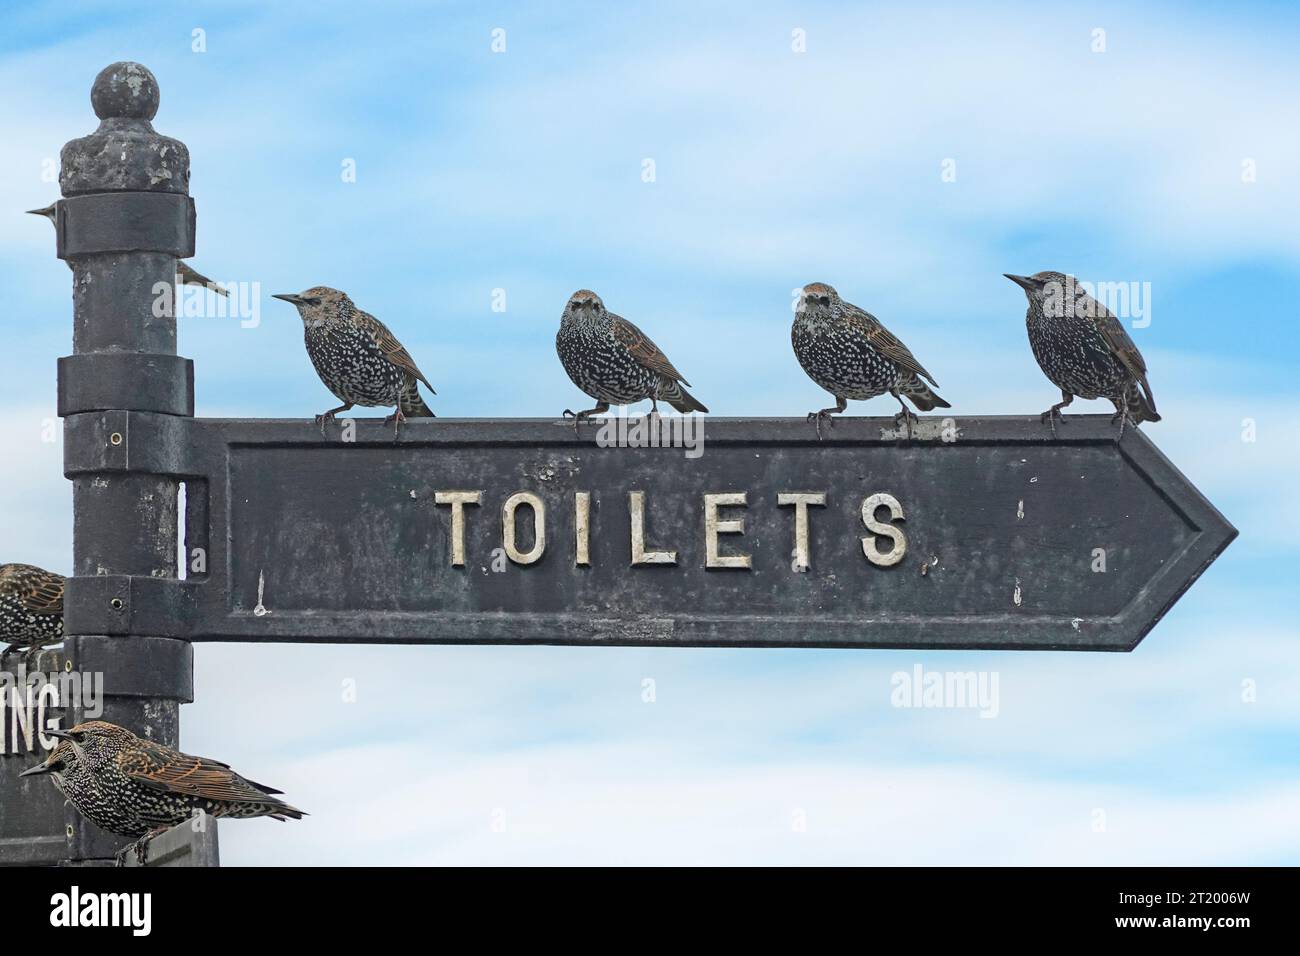 Les étourdissements qui font la queue sur les toilettes font signe face dans la mauvaise direction image humoristique d'oiseaux qui attendent patiemment quand la nature appelle Angleterre Royaume-Uni Banque D'Images